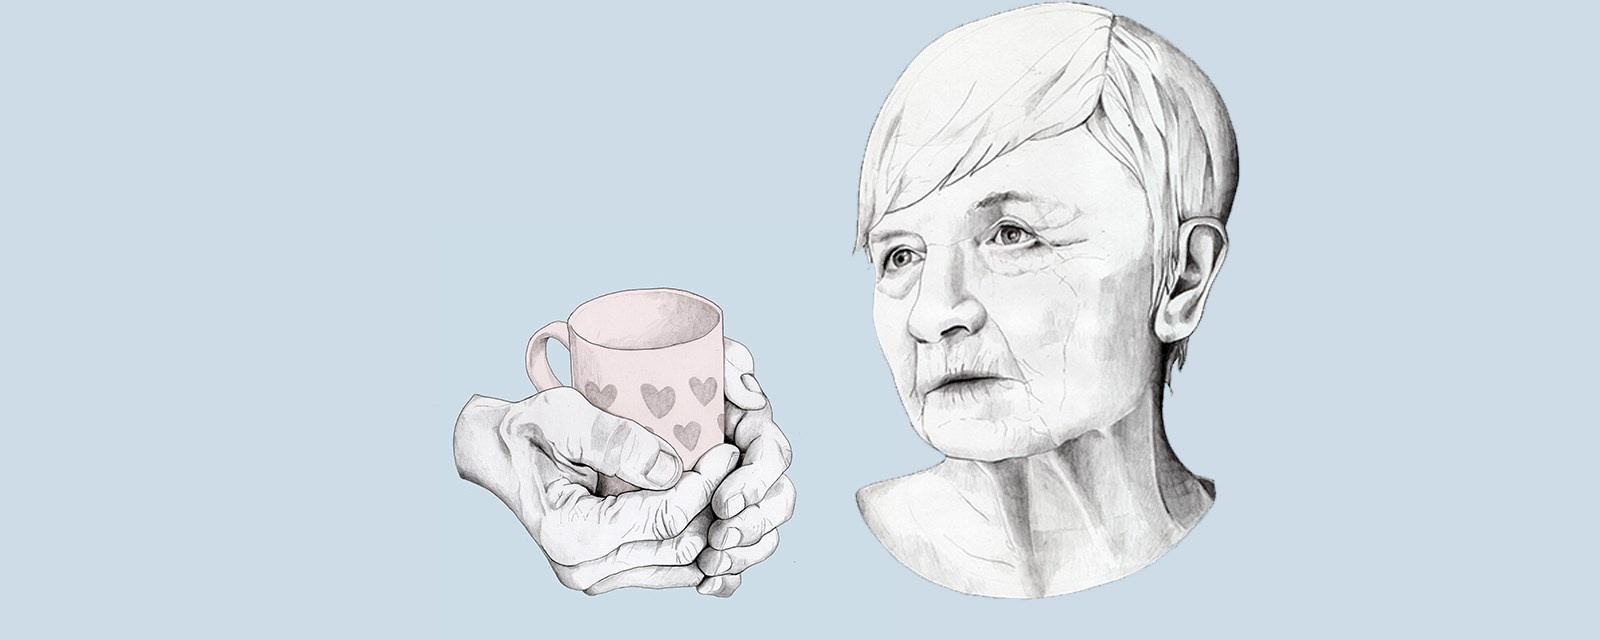 Tegning av en eldre kvinne som ser alvorlig ut og to hender som holder en kaffekopp